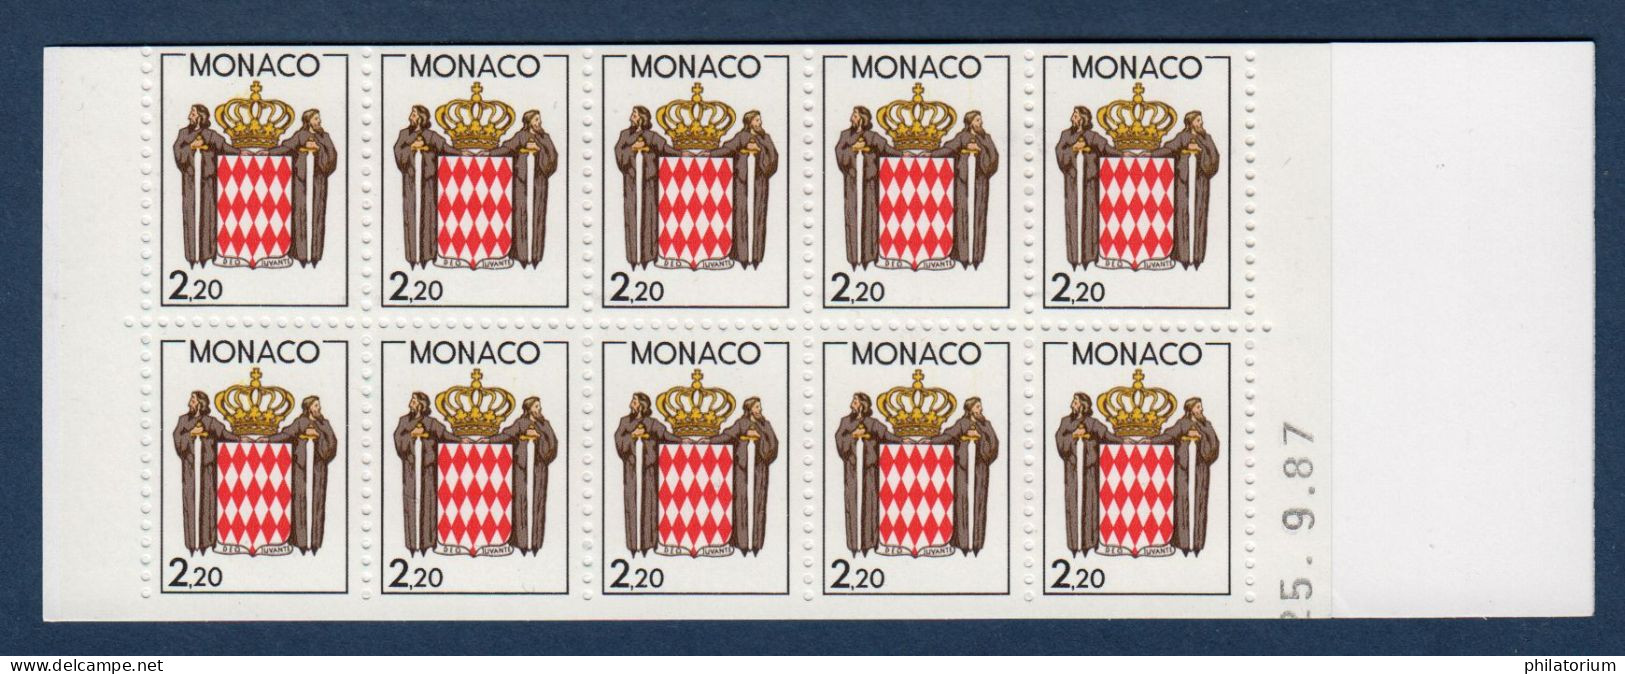 Monaco Timbre Neuf, Yv 1613, Carnet Usage Courant Non Plié, Daté 25.9.87, - Markenheftchen